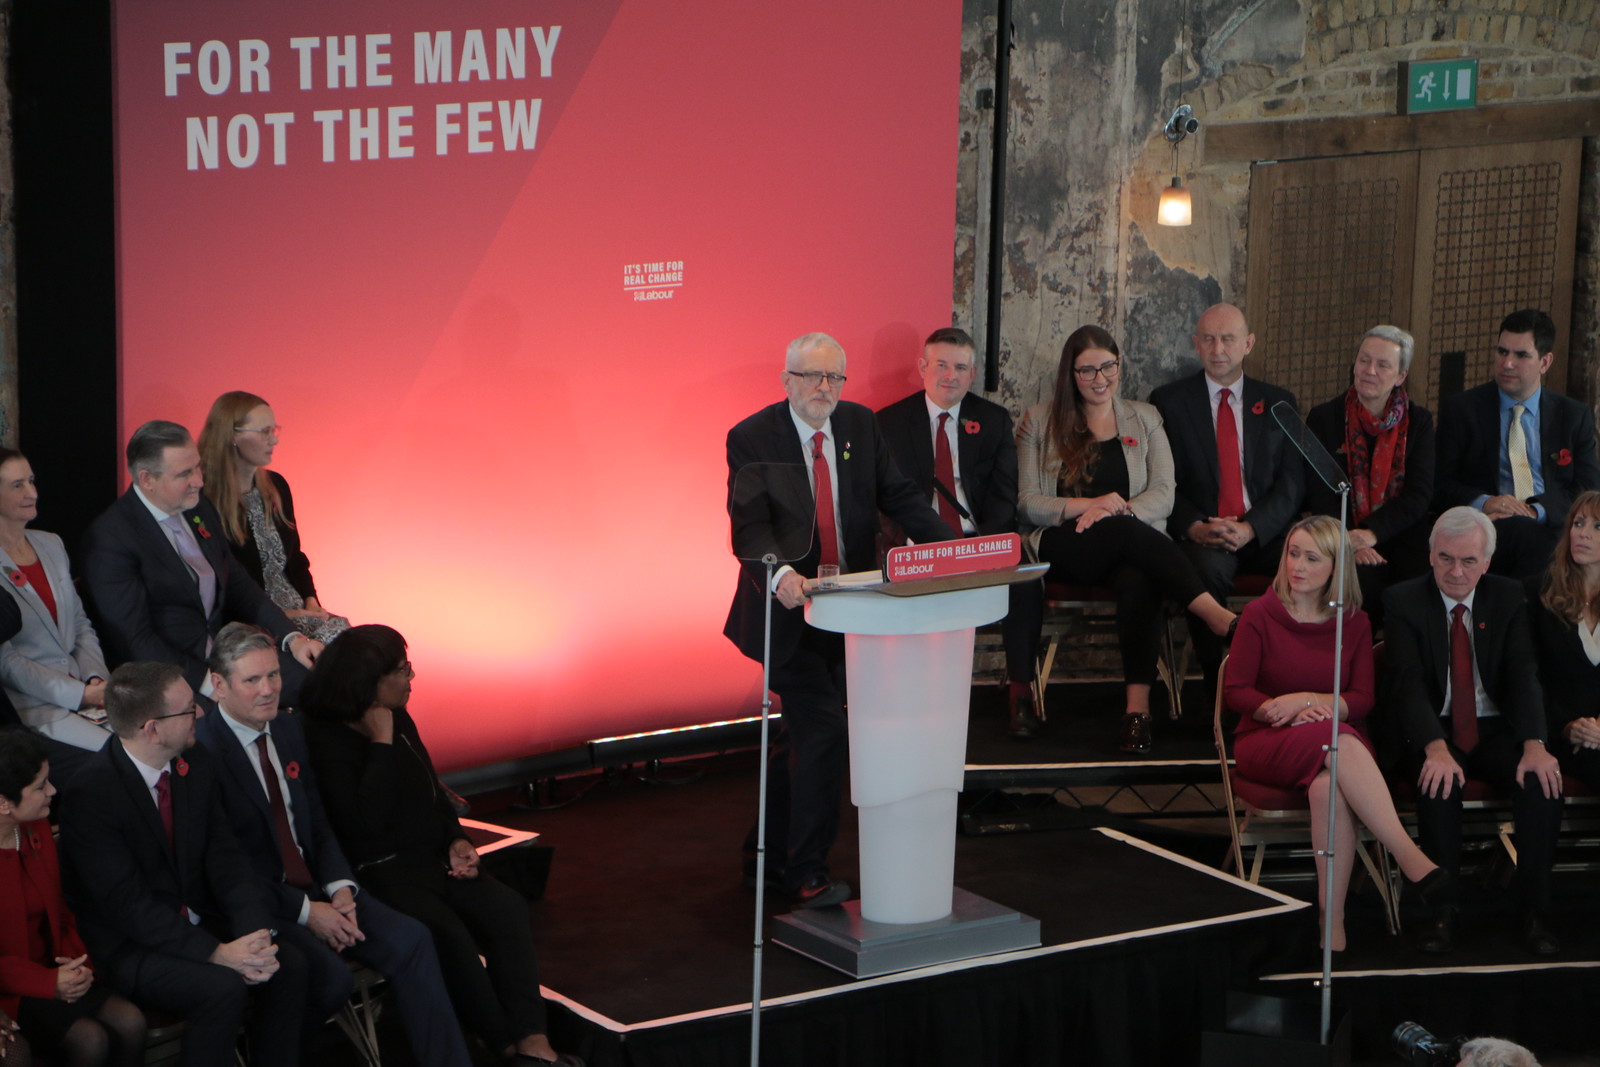 Labour election campaign launch